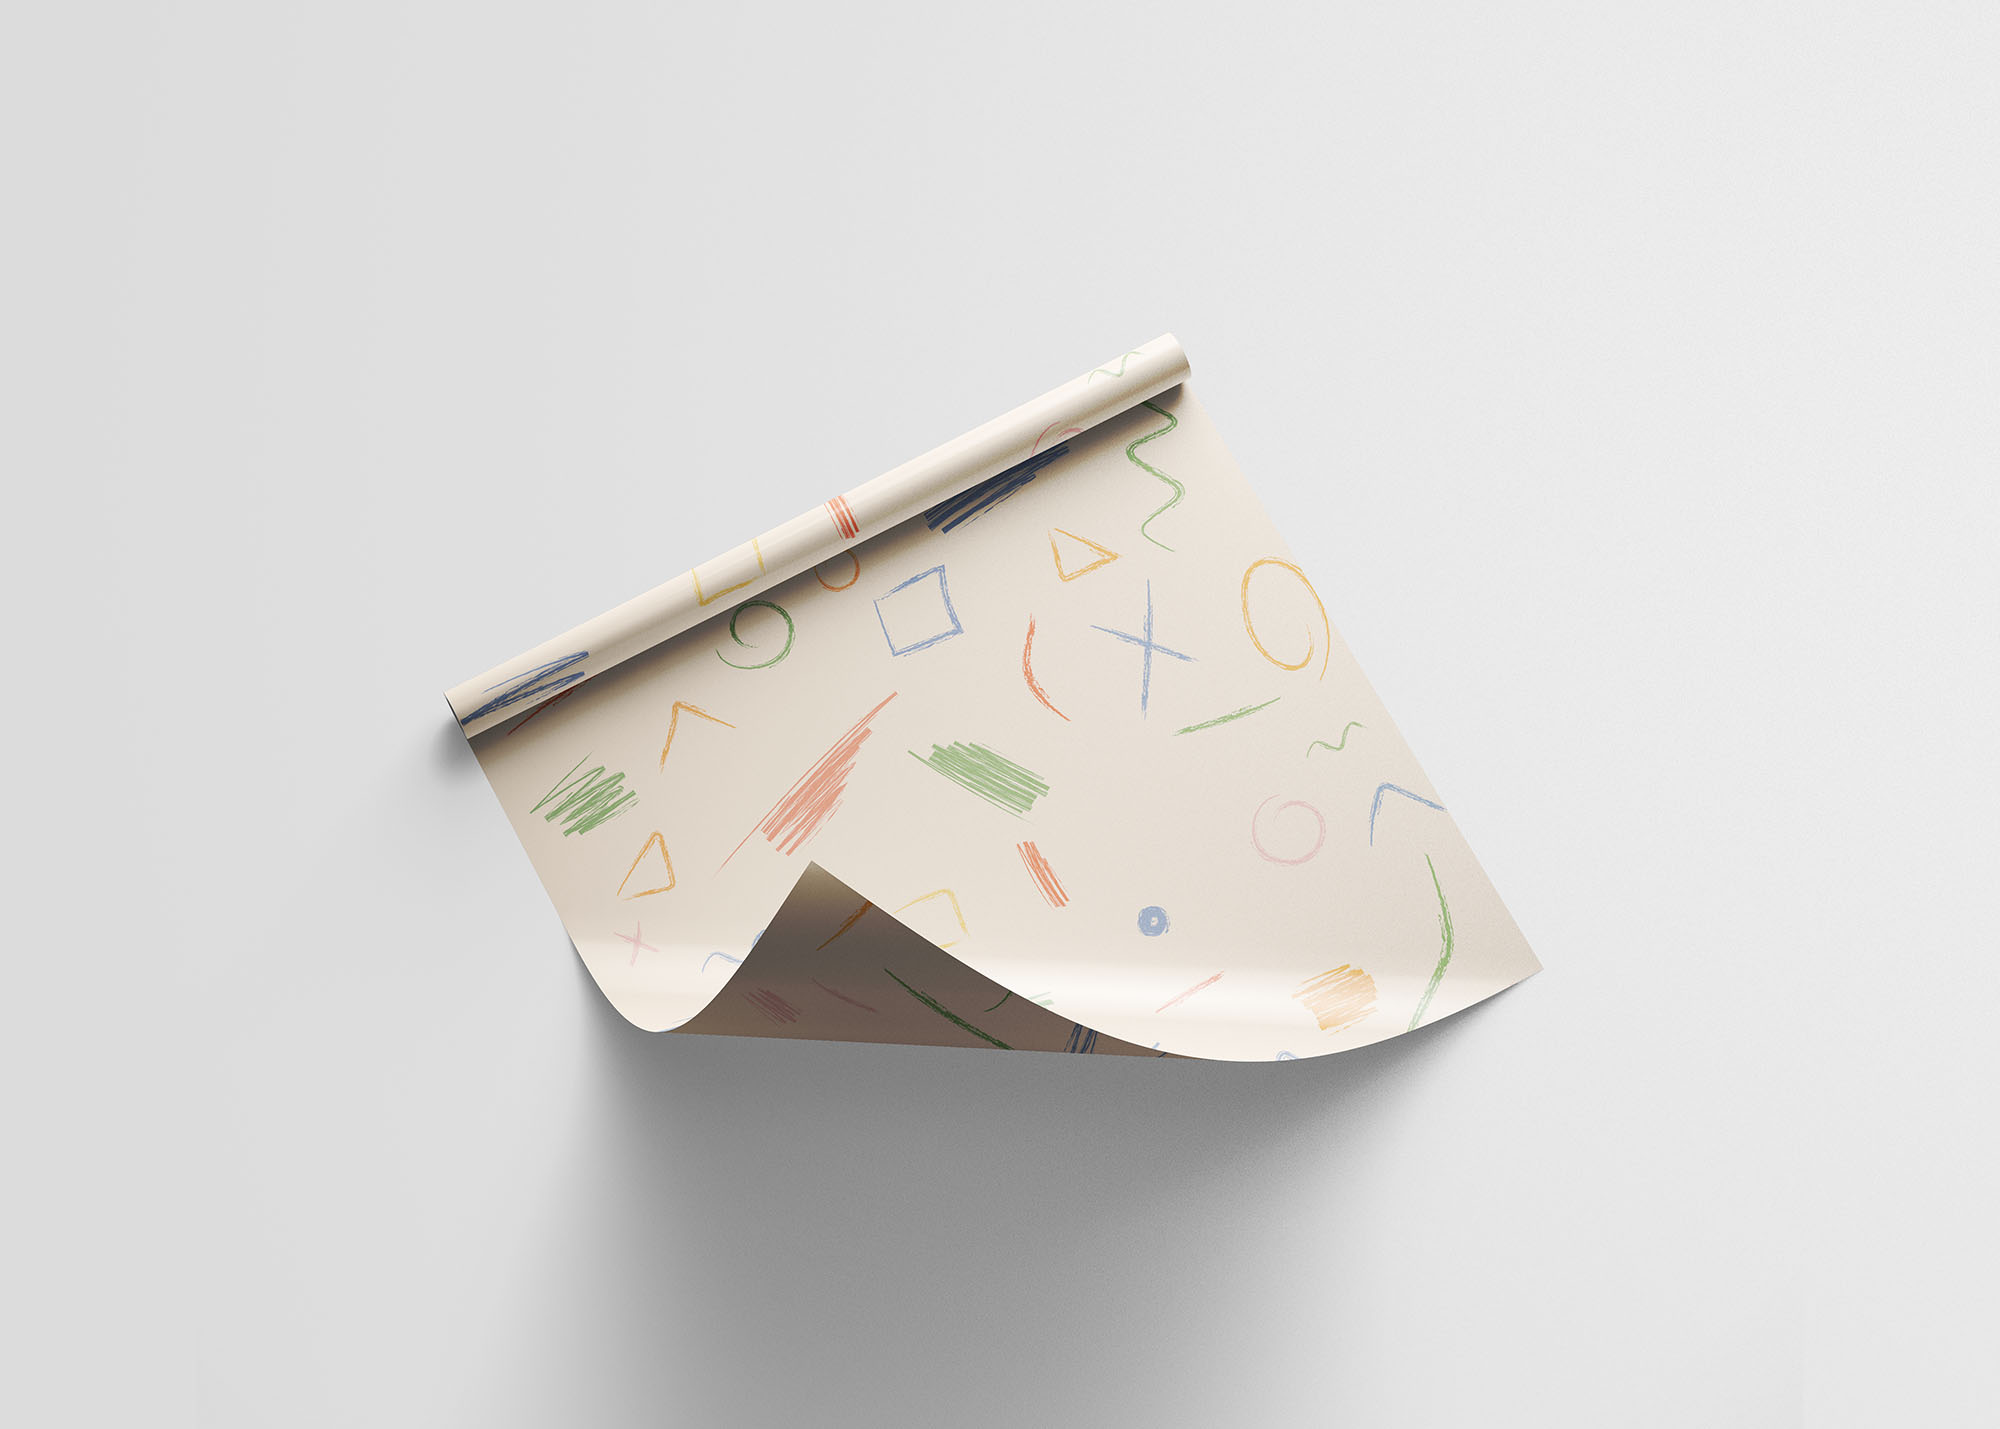 包装纸图案纹理设计效果预览样机模板 Wrapping Paper Mockup插图(6)